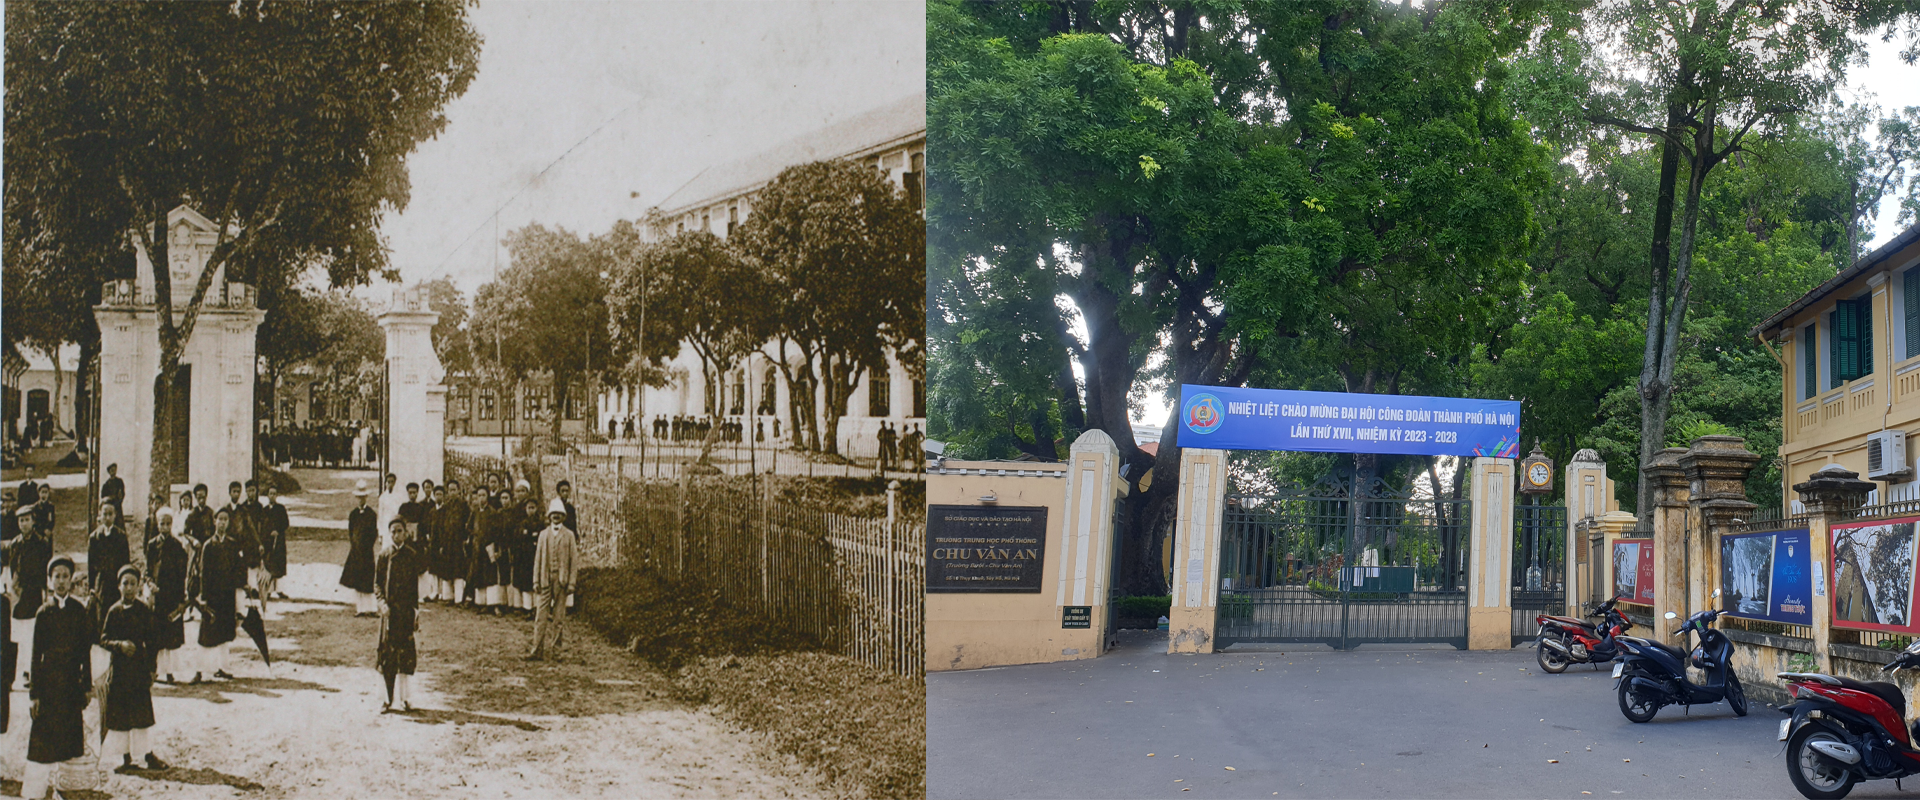 Những hình ảnh thú vị về sự đổi thay của Hà Nội sau 100 năm - Ảnh 11.